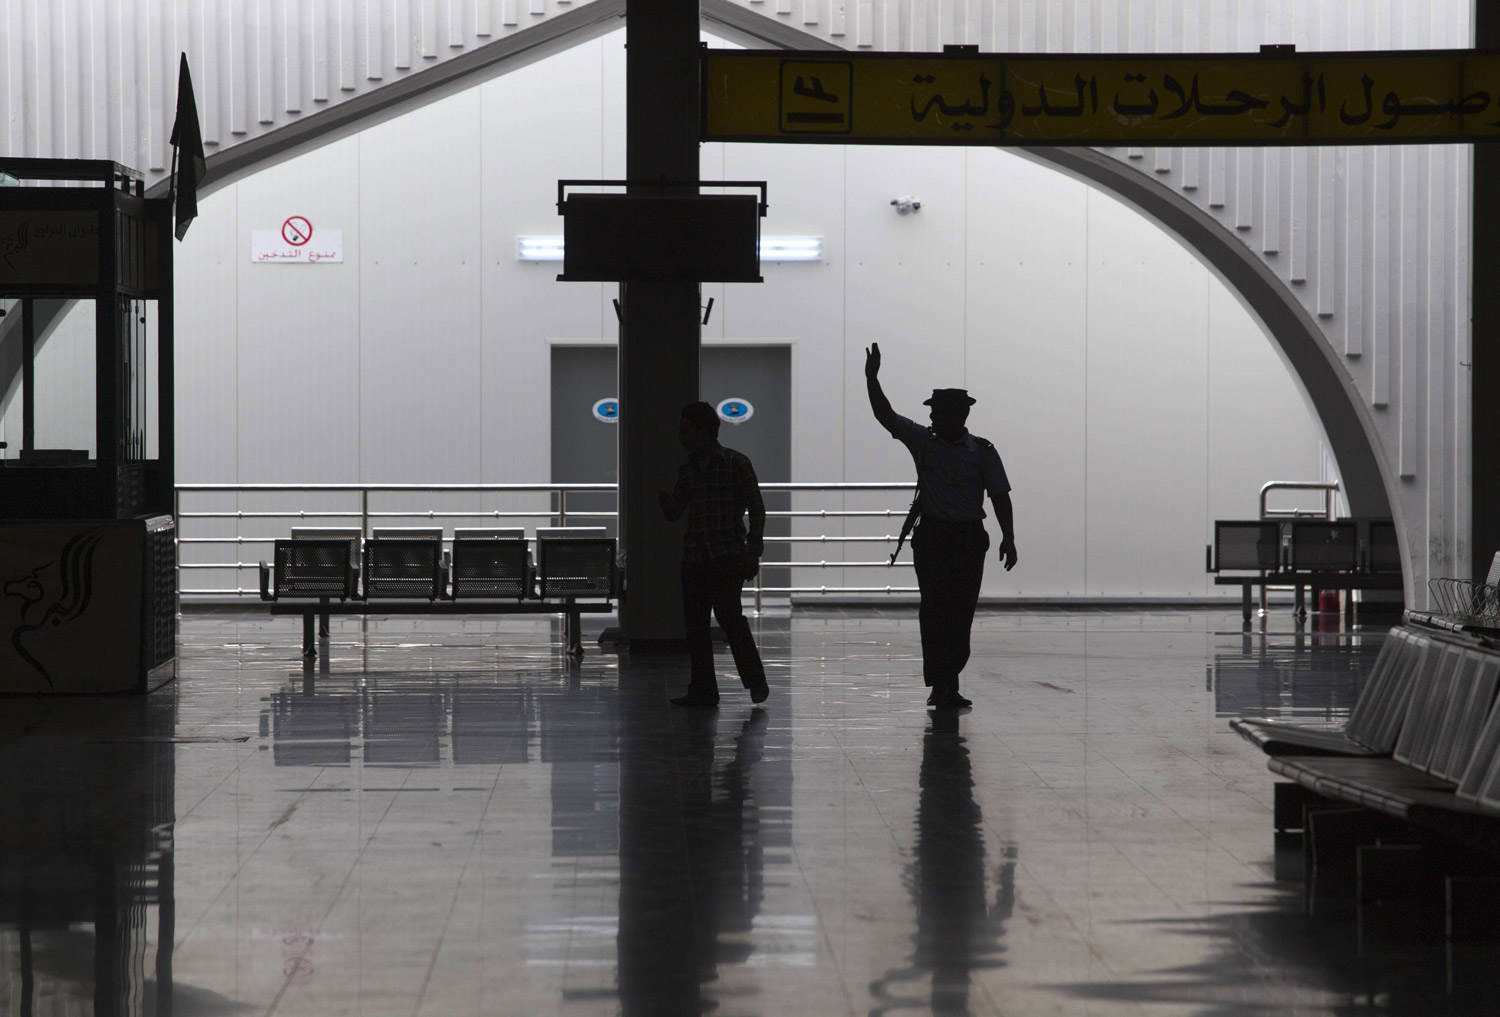 المطار الذي تستخدمه الوفاق لأغراض عسكرية أصبح يمثل خطرا على المدنيين